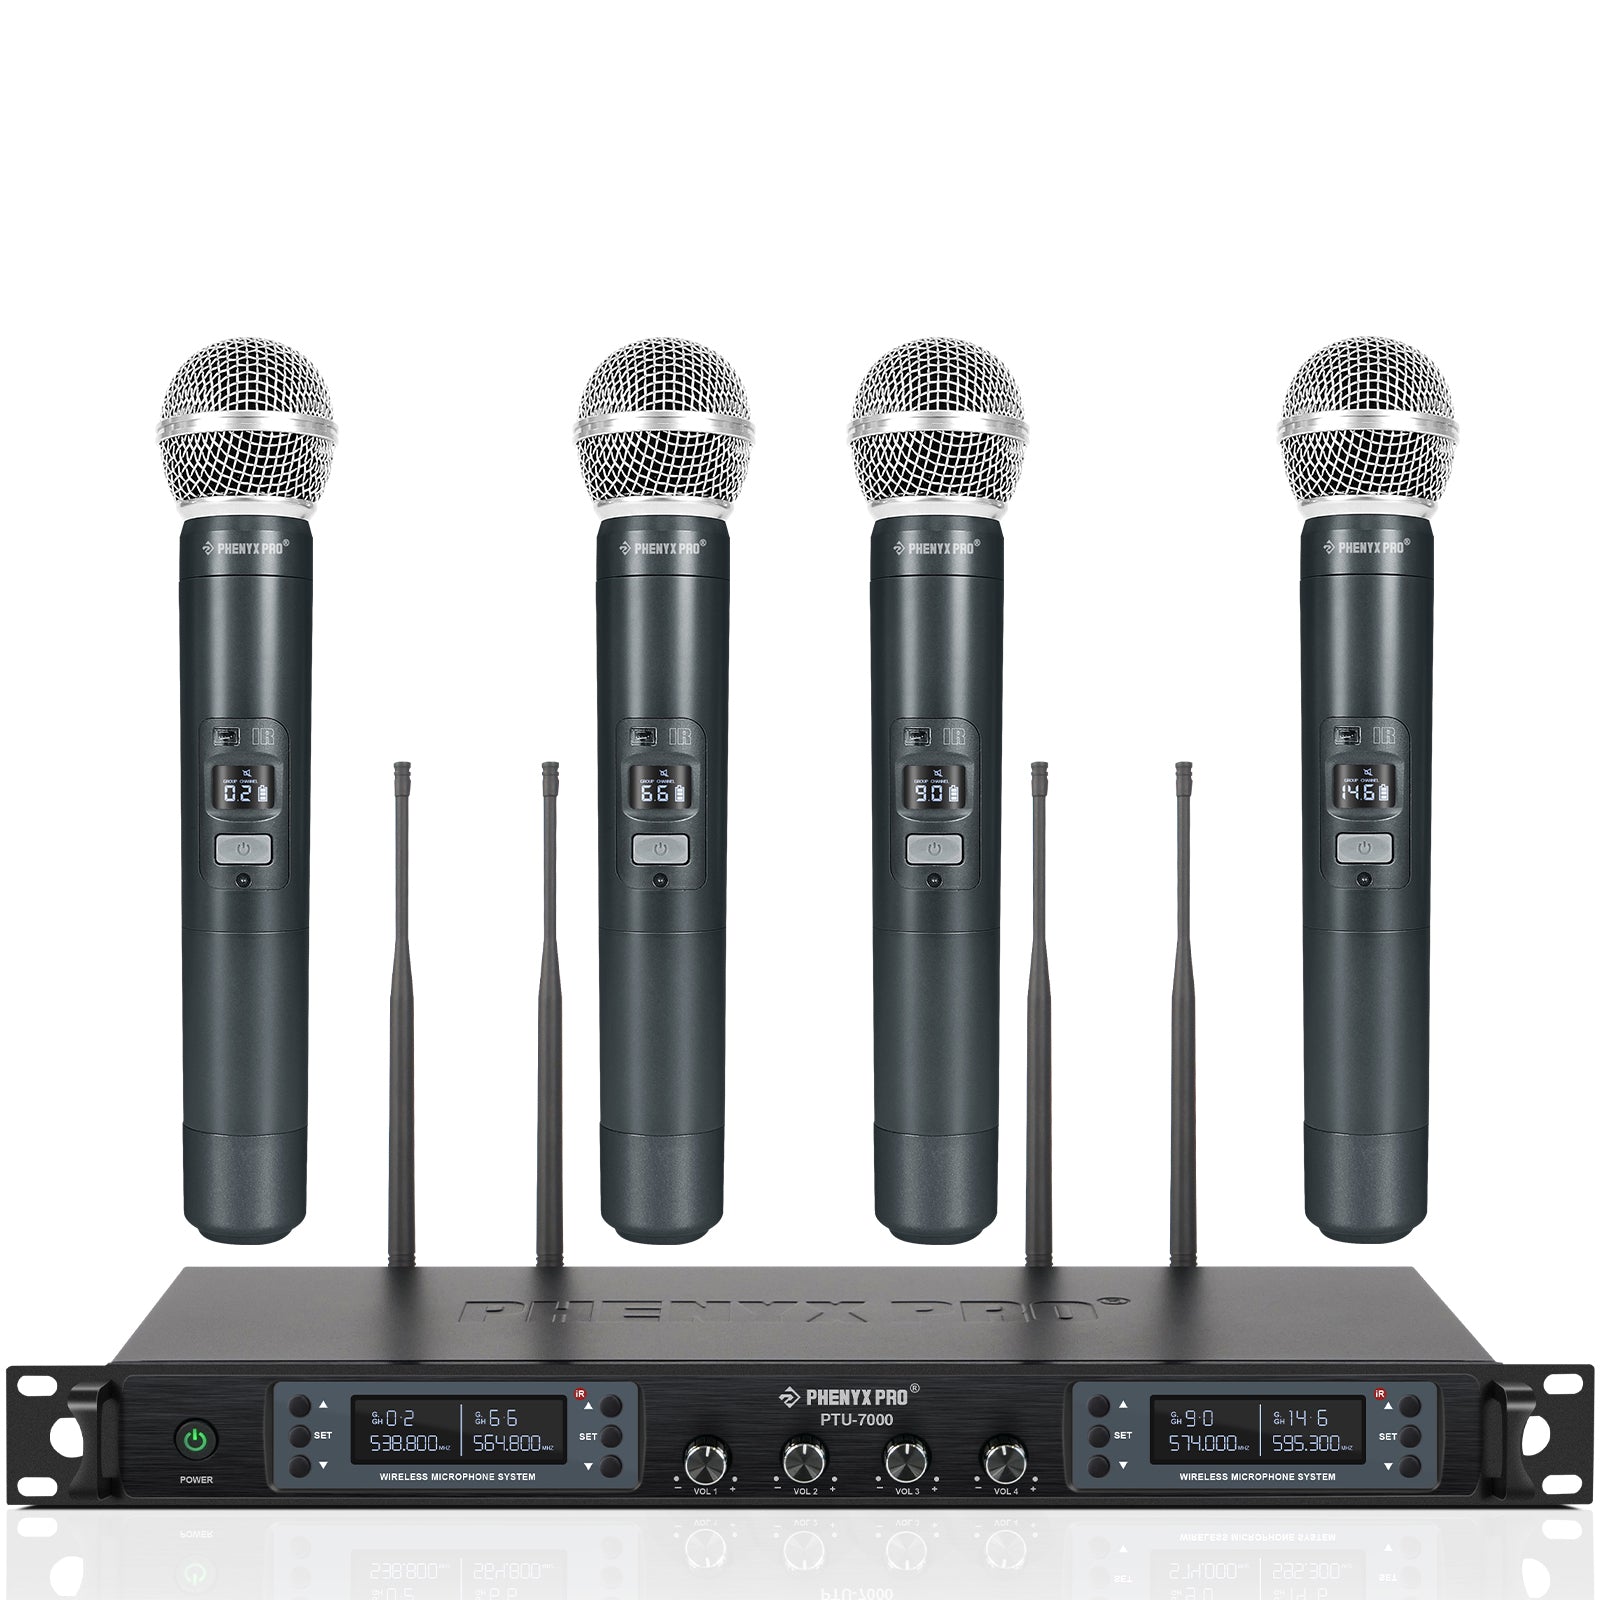 PTU-7000-4H | Quad UHF Wireless Microphone System w/ Auto-Scan